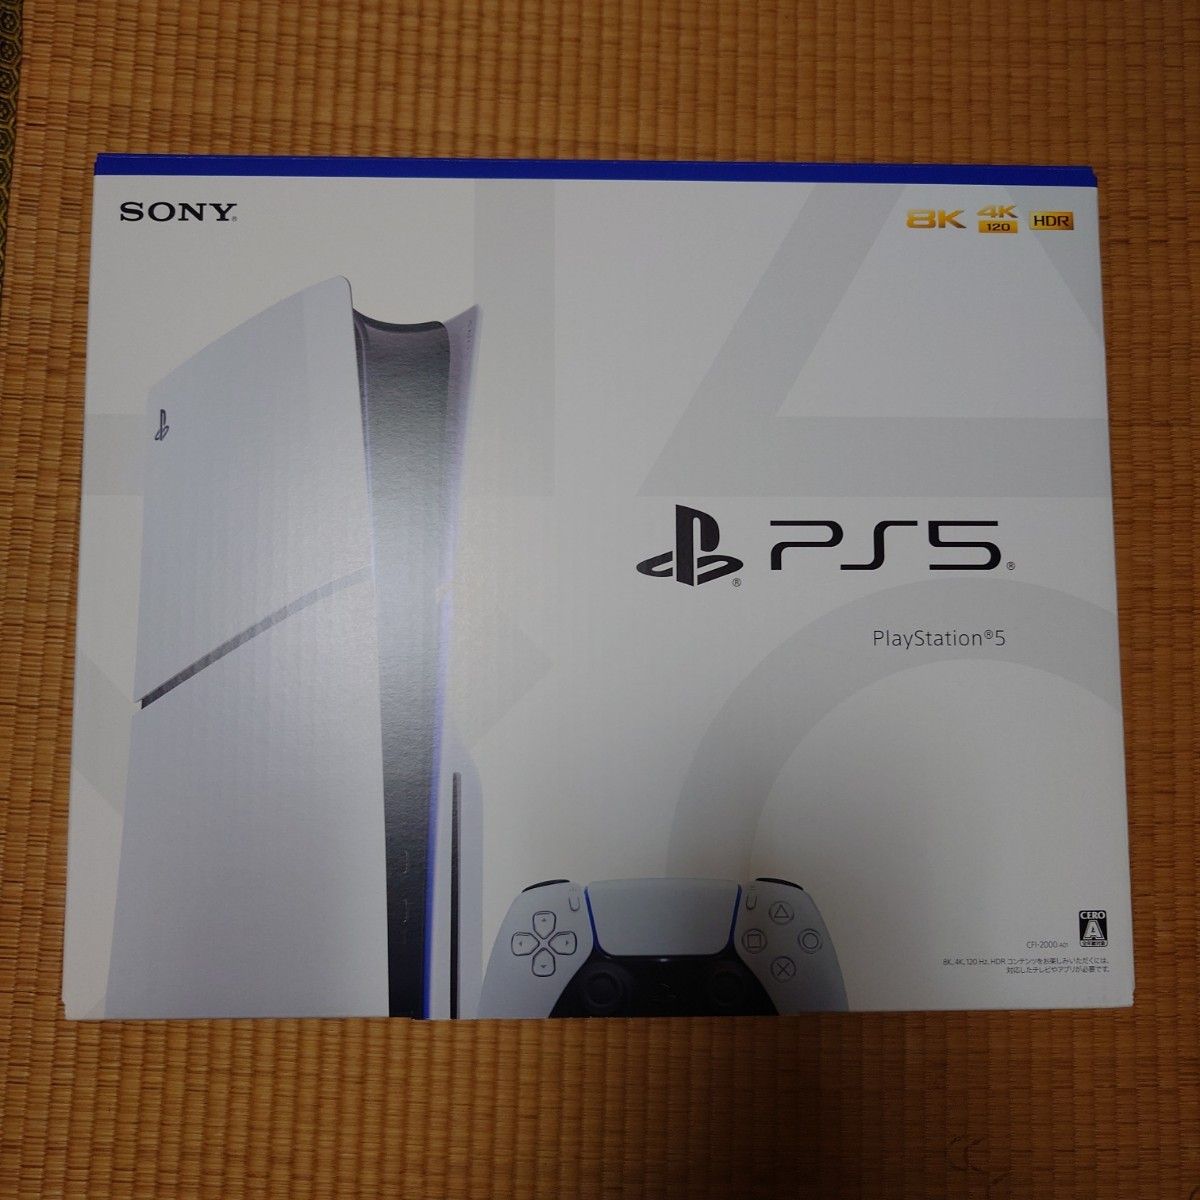 未使用 SONY 新型 PlayStation5 CFI-2000A01（開封済み） Yahoo!フリマ